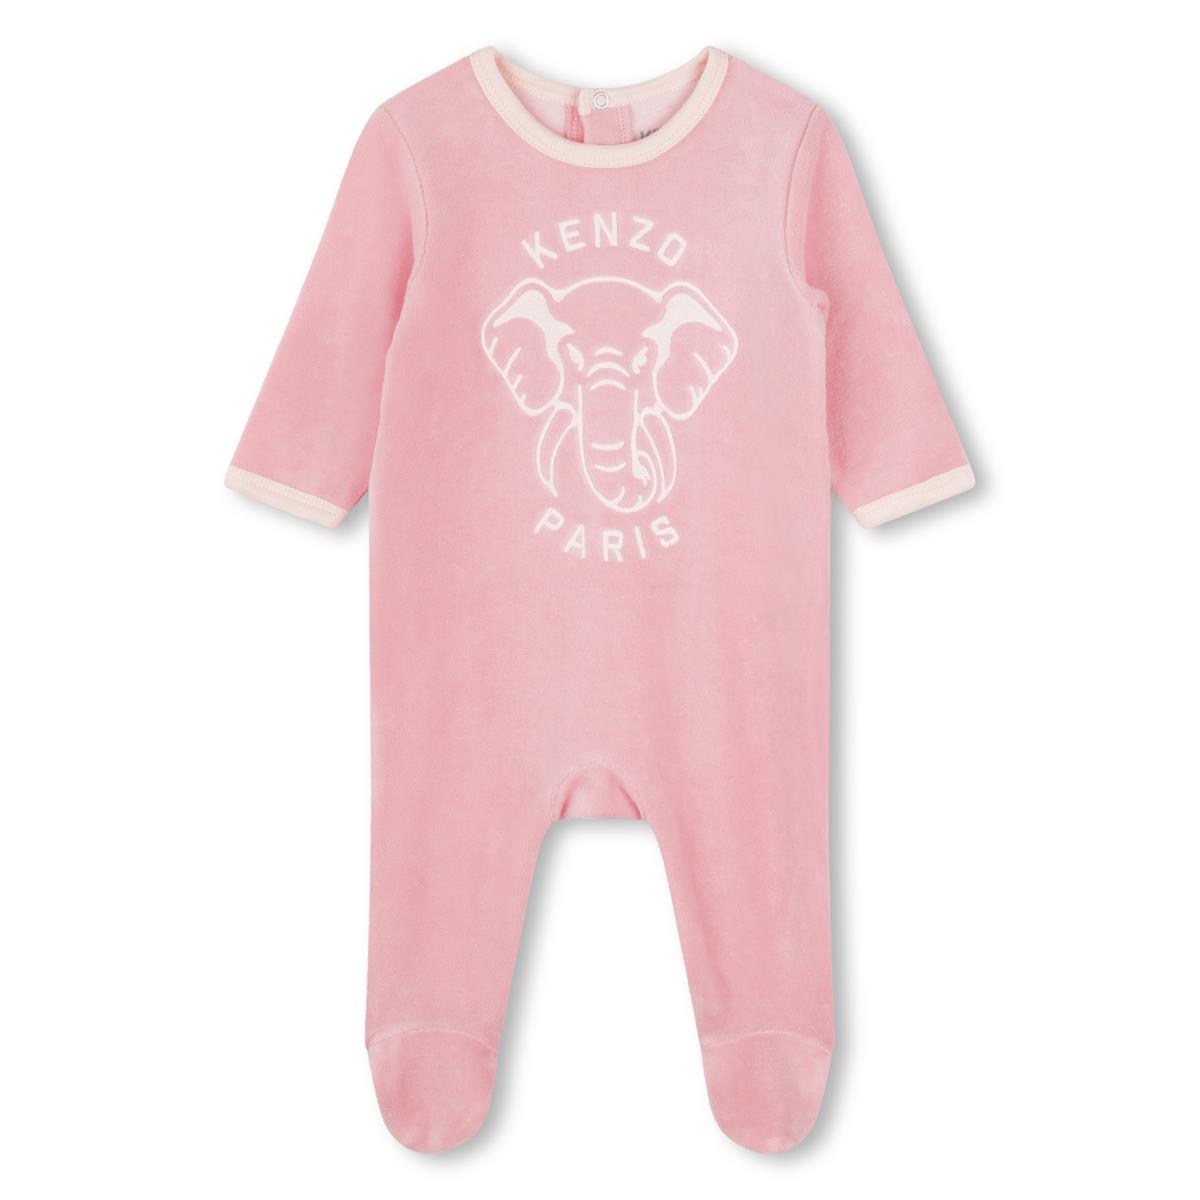 Baby Girls Pink Cotton Babysuit Set